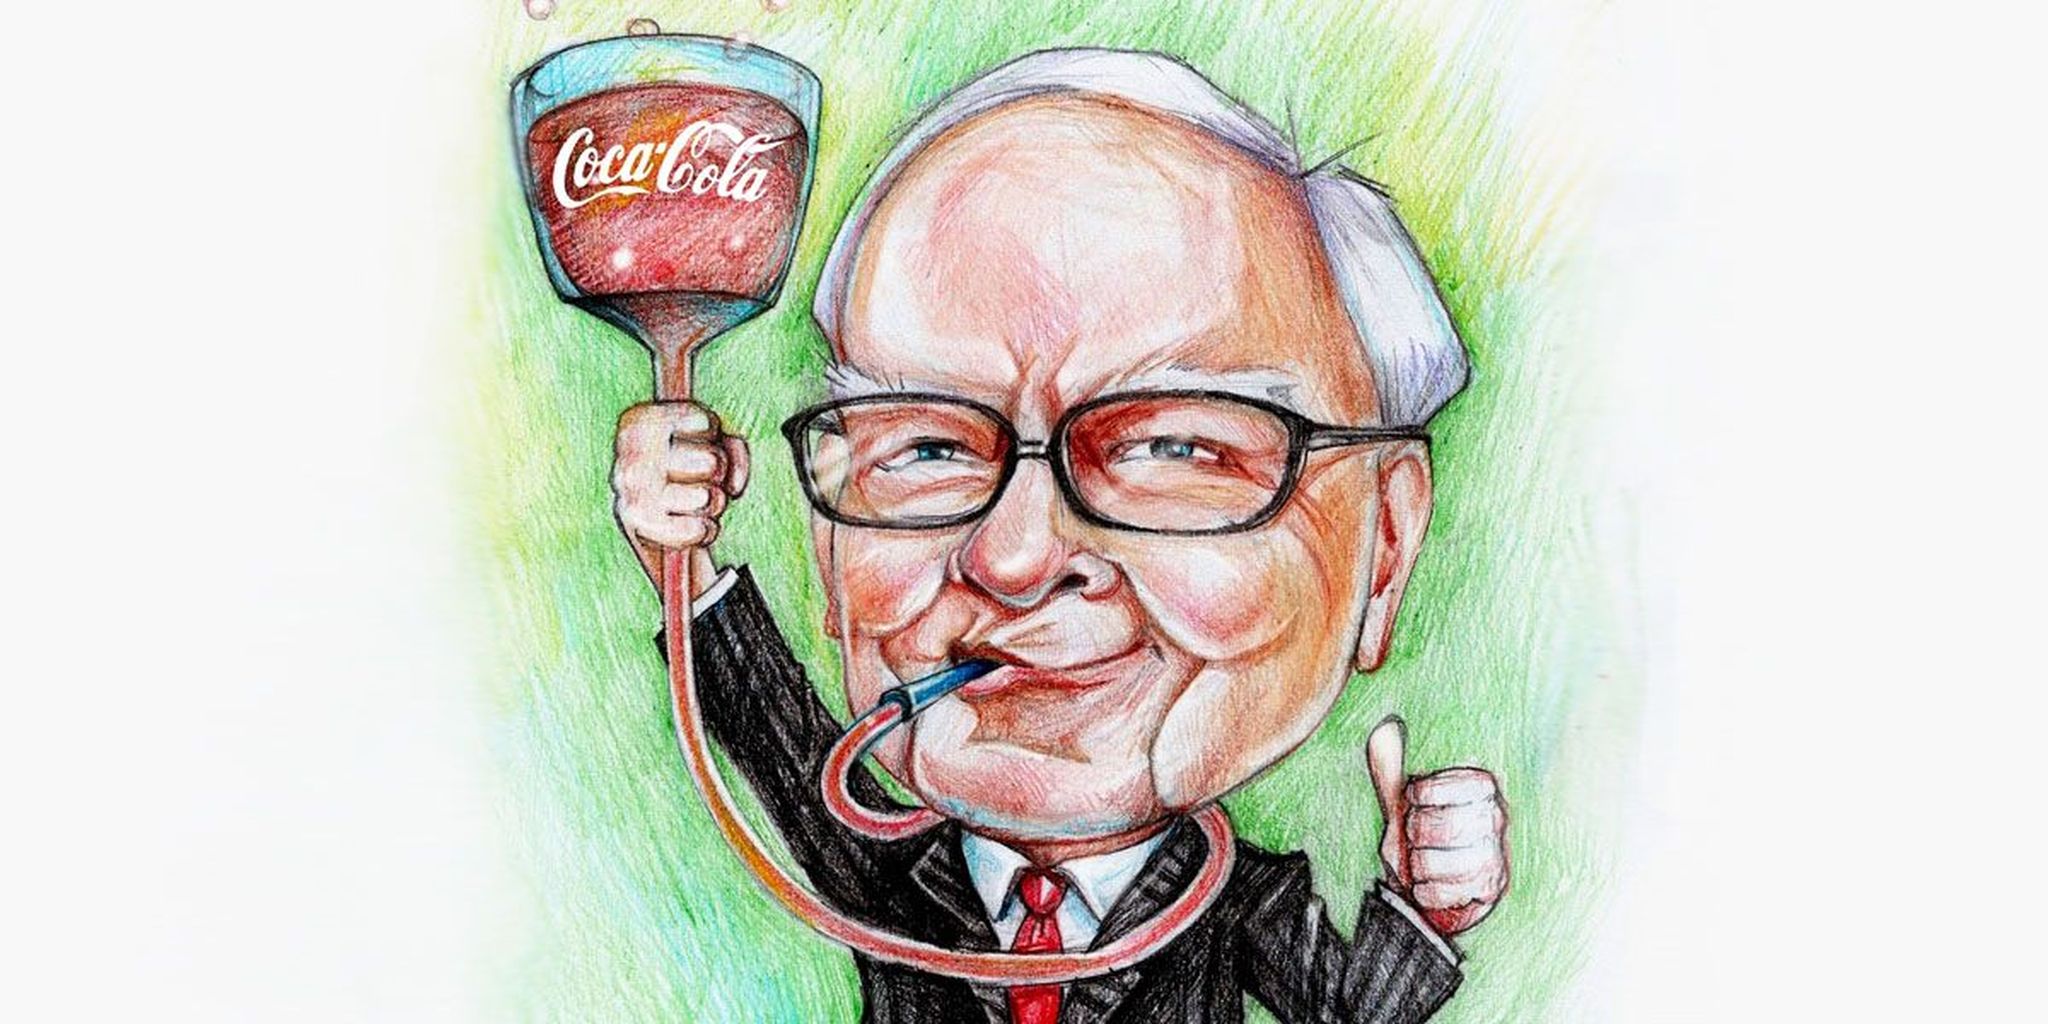 De Coca-Cola-liefde van Warren Buffett